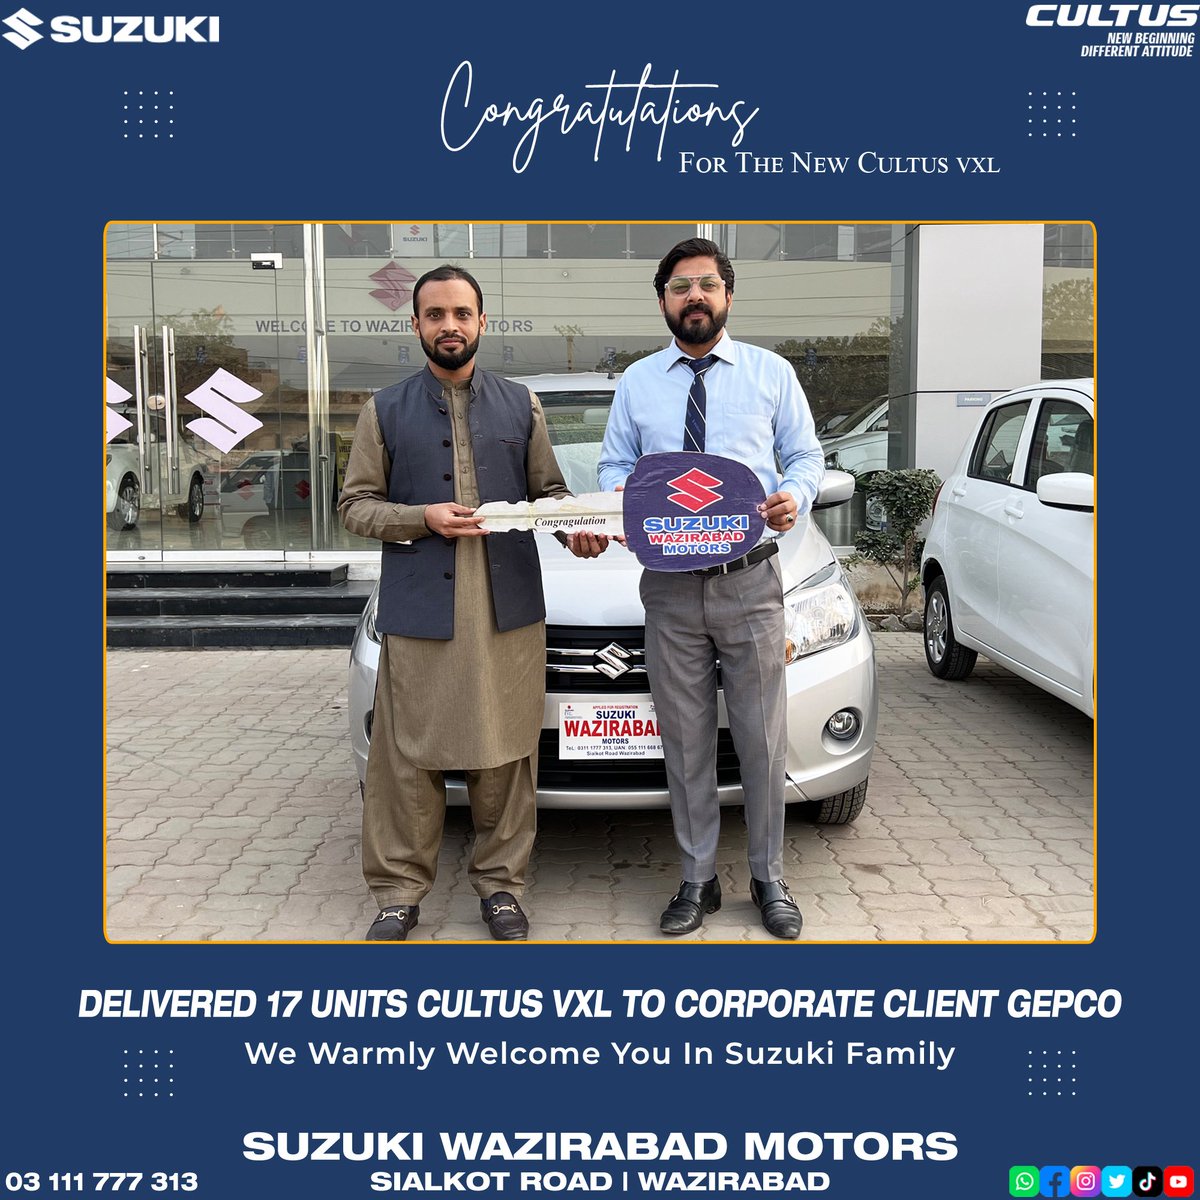 𝟏𝟕 𝐔𝐧𝐢𝐭𝐬 𝐂𝐮𝐥𝐭𝐮𝐬 𝐕𝐗𝐋 𝐃𝐞𝐥𝐢𝐯𝐞𝐫𝐞𝐝 𝐭𝐨 𝐂𝐨𝐫𝐩𝐨𝐫𝐚𝐭𝐞 𝐂𝐥𝐢𝐞𝐧𝐭 𝐆𝐮𝐣𝐫𝐚𝐧𝐰𝐚𝐥𝐚 𝐄𝐥𝐞𝐜𝐭𝐫𝐢𝐜 𝐏𝐨𝐰𝐞𝐫 𝐂𝐨𝐦𝐩𝐚𝐧𝐲. (𝐆𝐄𝐏𝐂𝐎)

𝐒𝐮𝐳𝐮𝐤𝐢 𝐖𝐚𝐳𝐢𝐫𝐚𝐛𝐚𝐝 𝐌𝐨𝐭𝐨𝐫𝐬
#CorporateClient #Suzuki #SuzukiPakistan